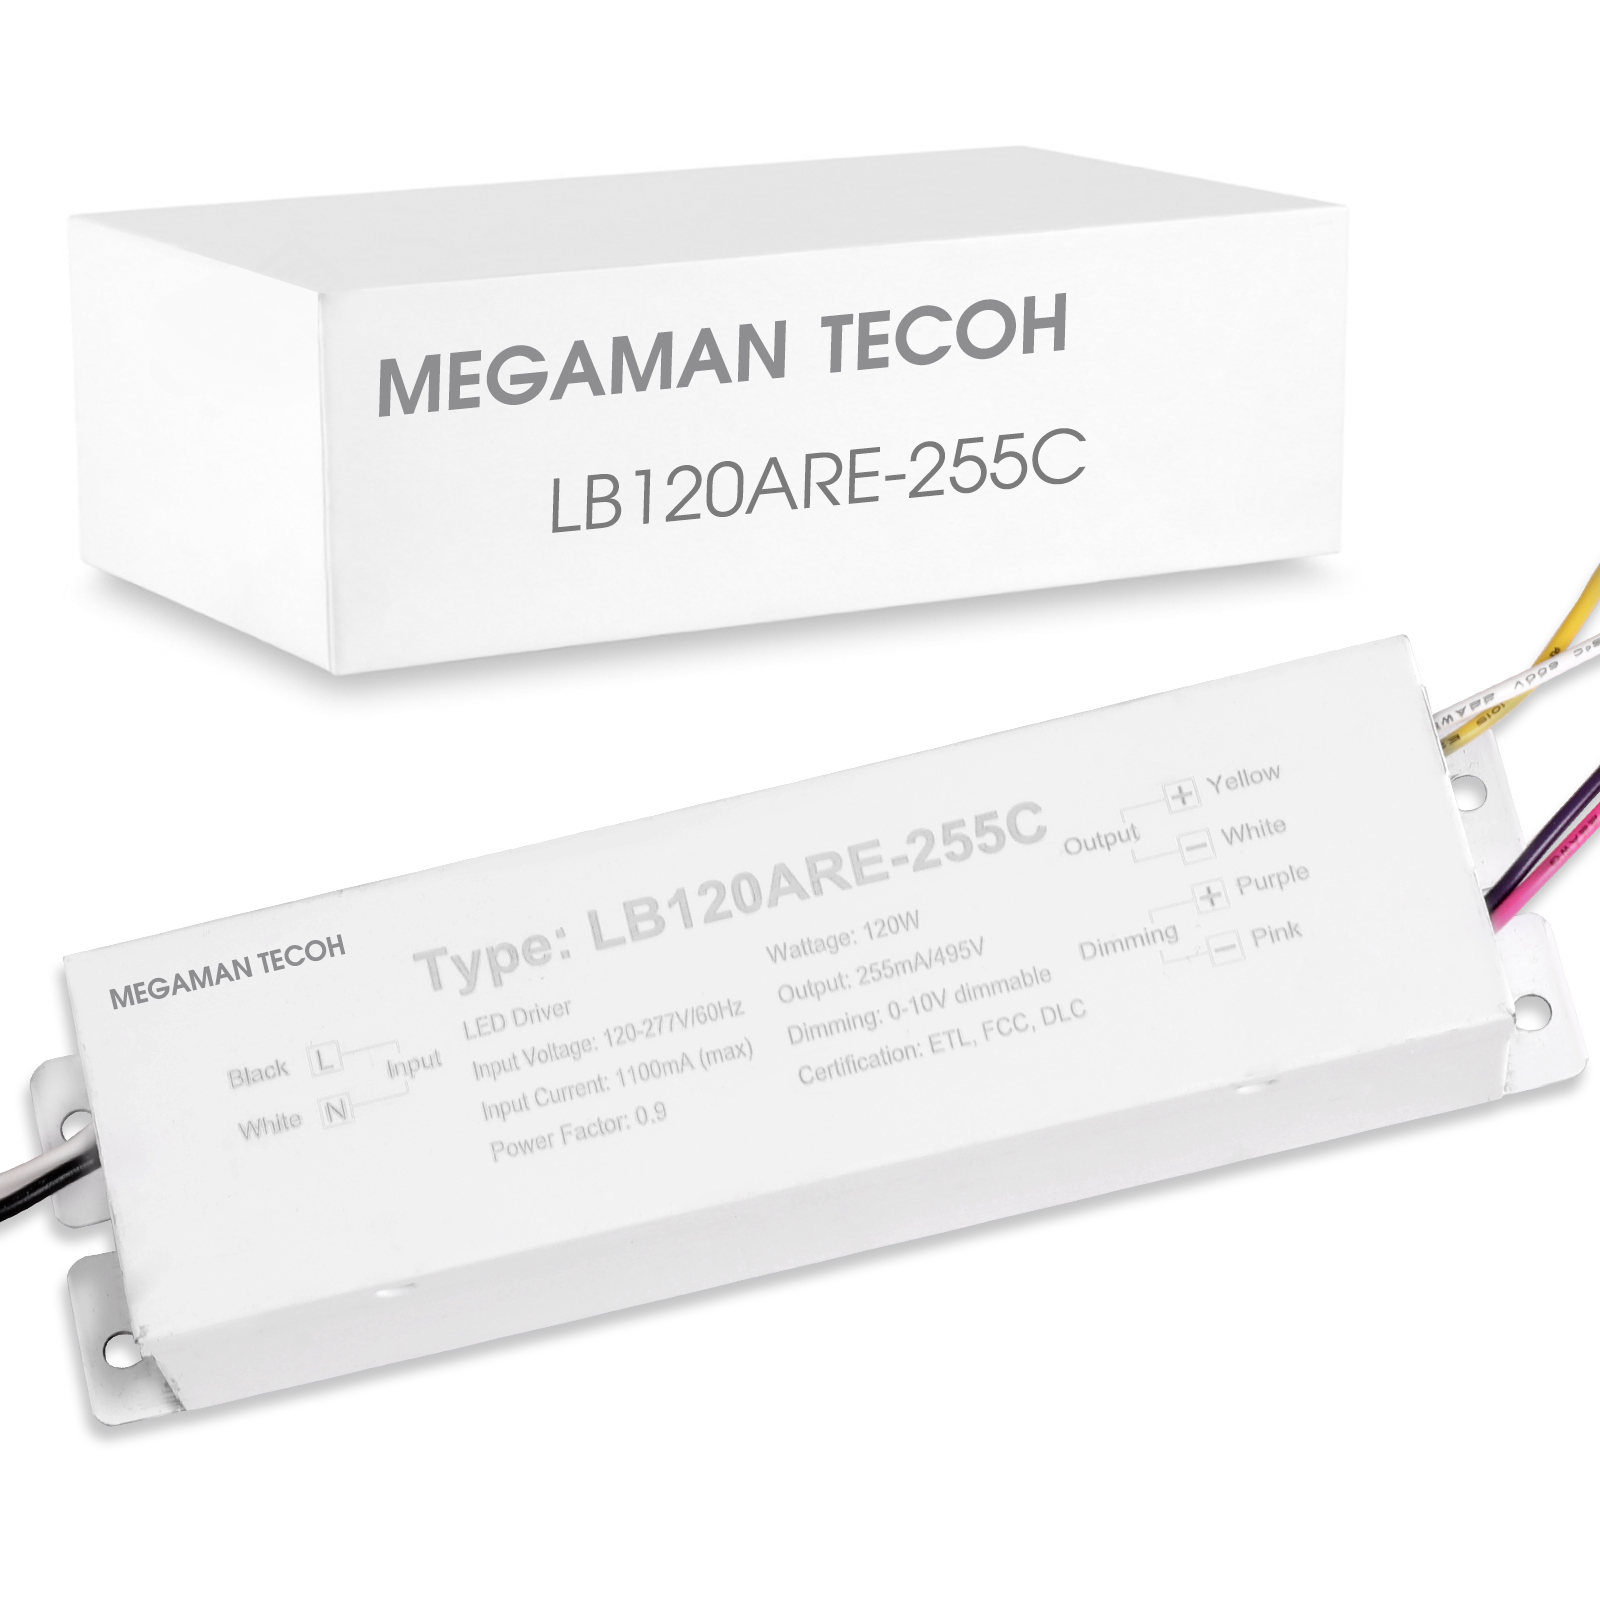 MEGAMAN TECOH LED Driver LB120ARE-255C